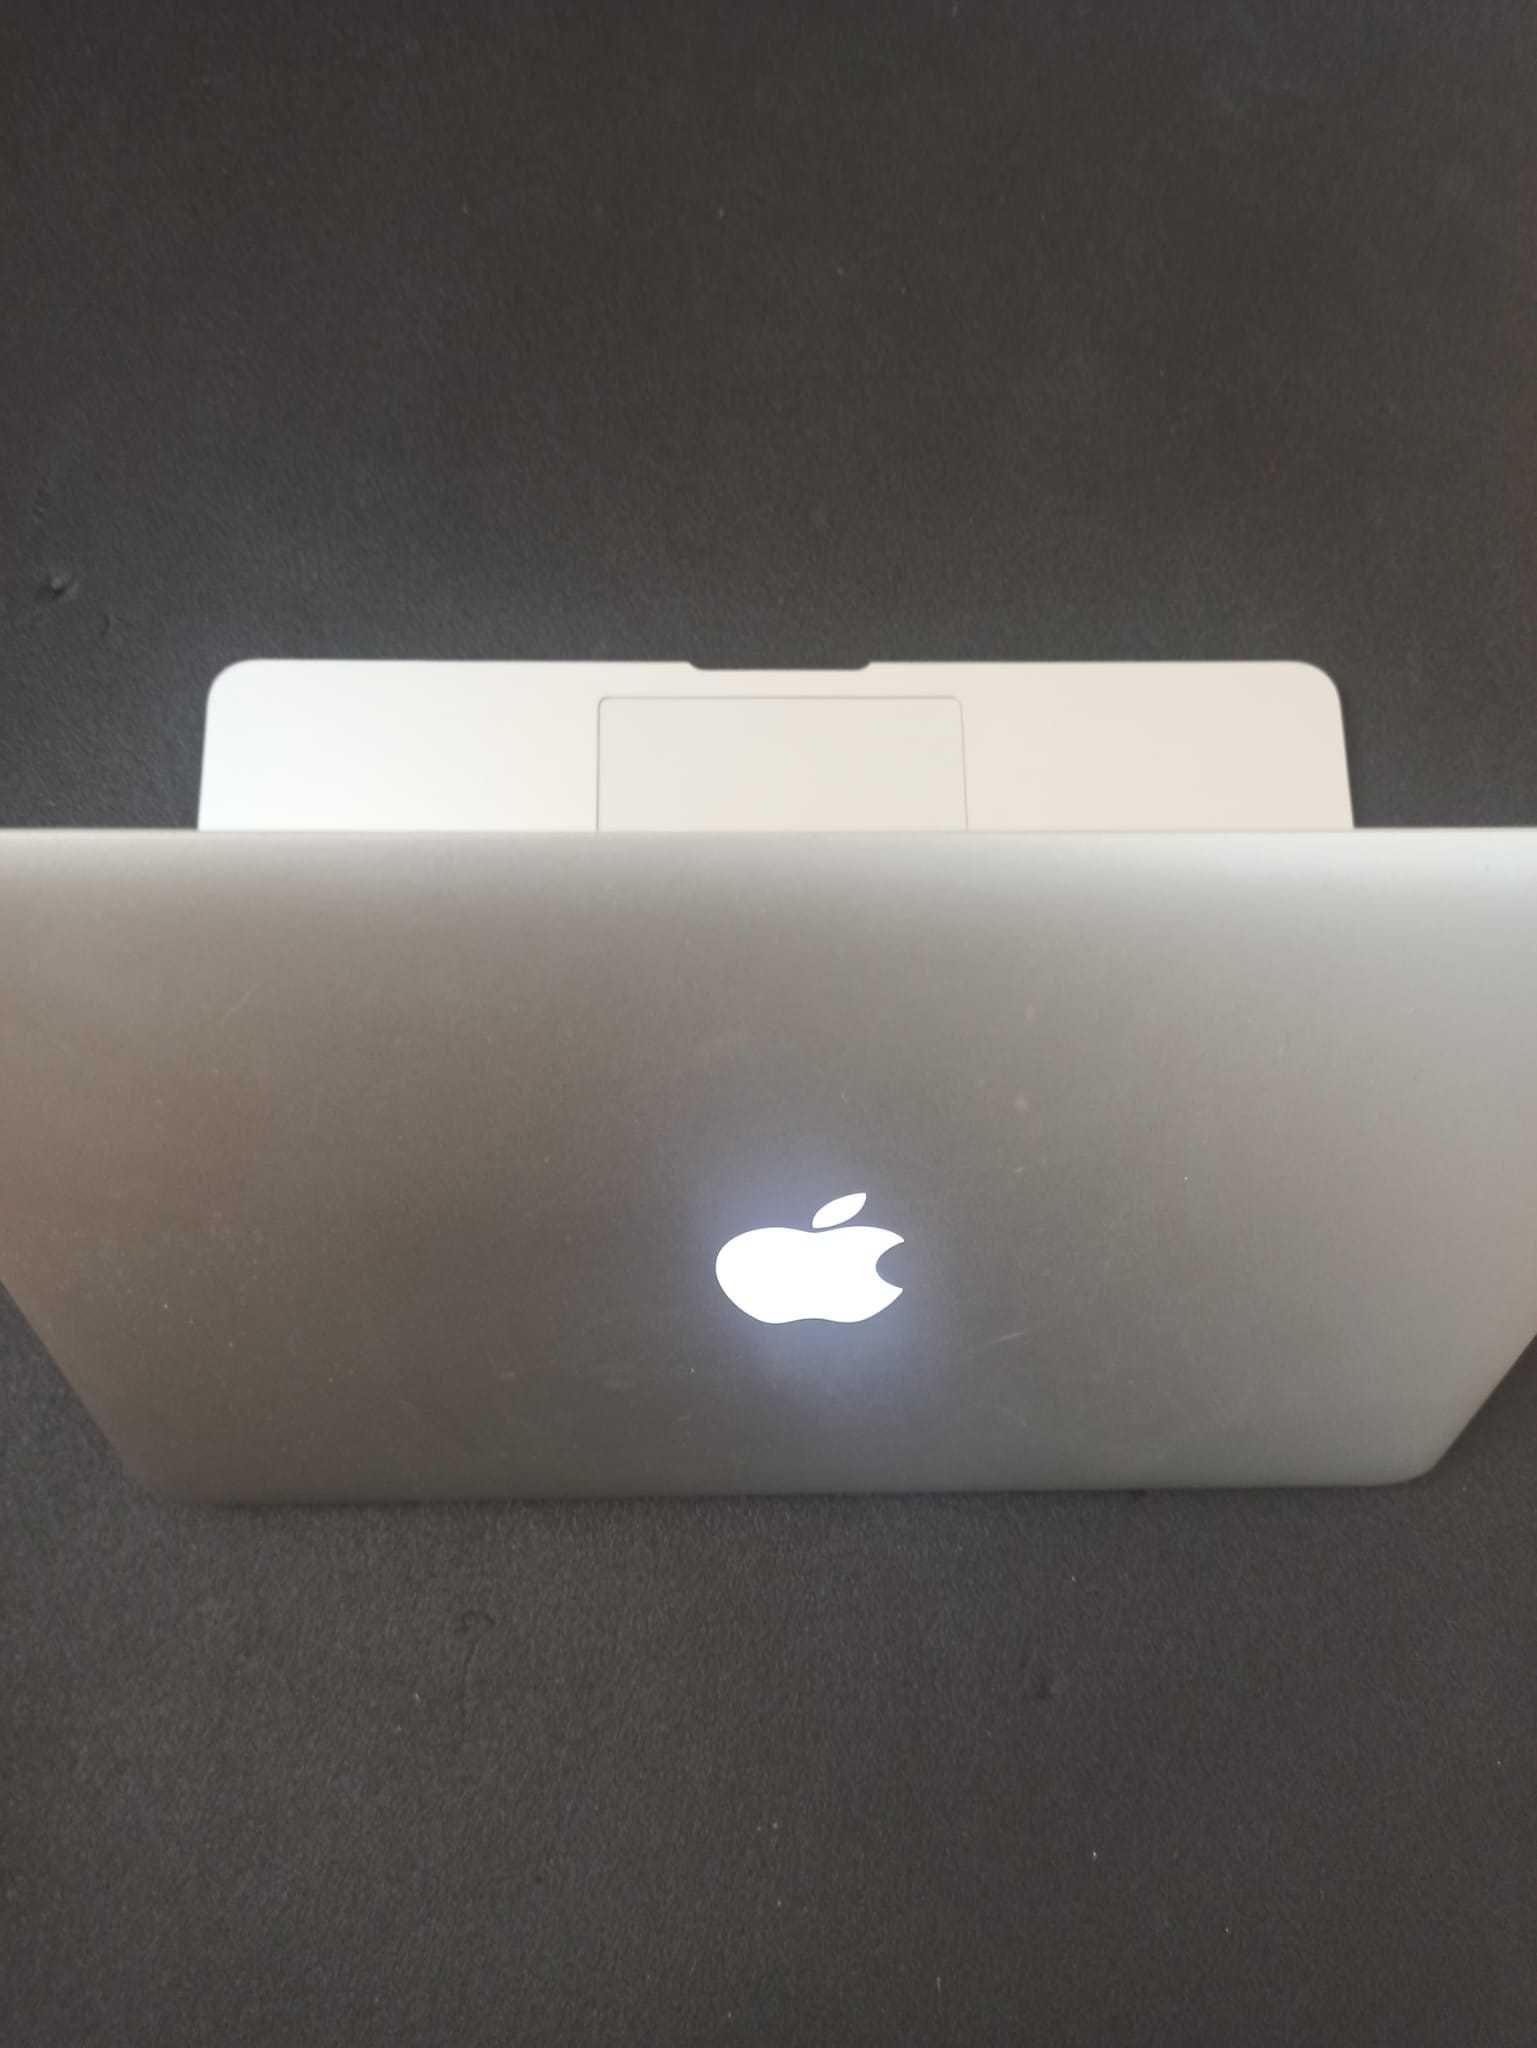 Apple Macbook Air'17  [8GB - 13INCH - 1.8 GHZ - i5 - 128GB]